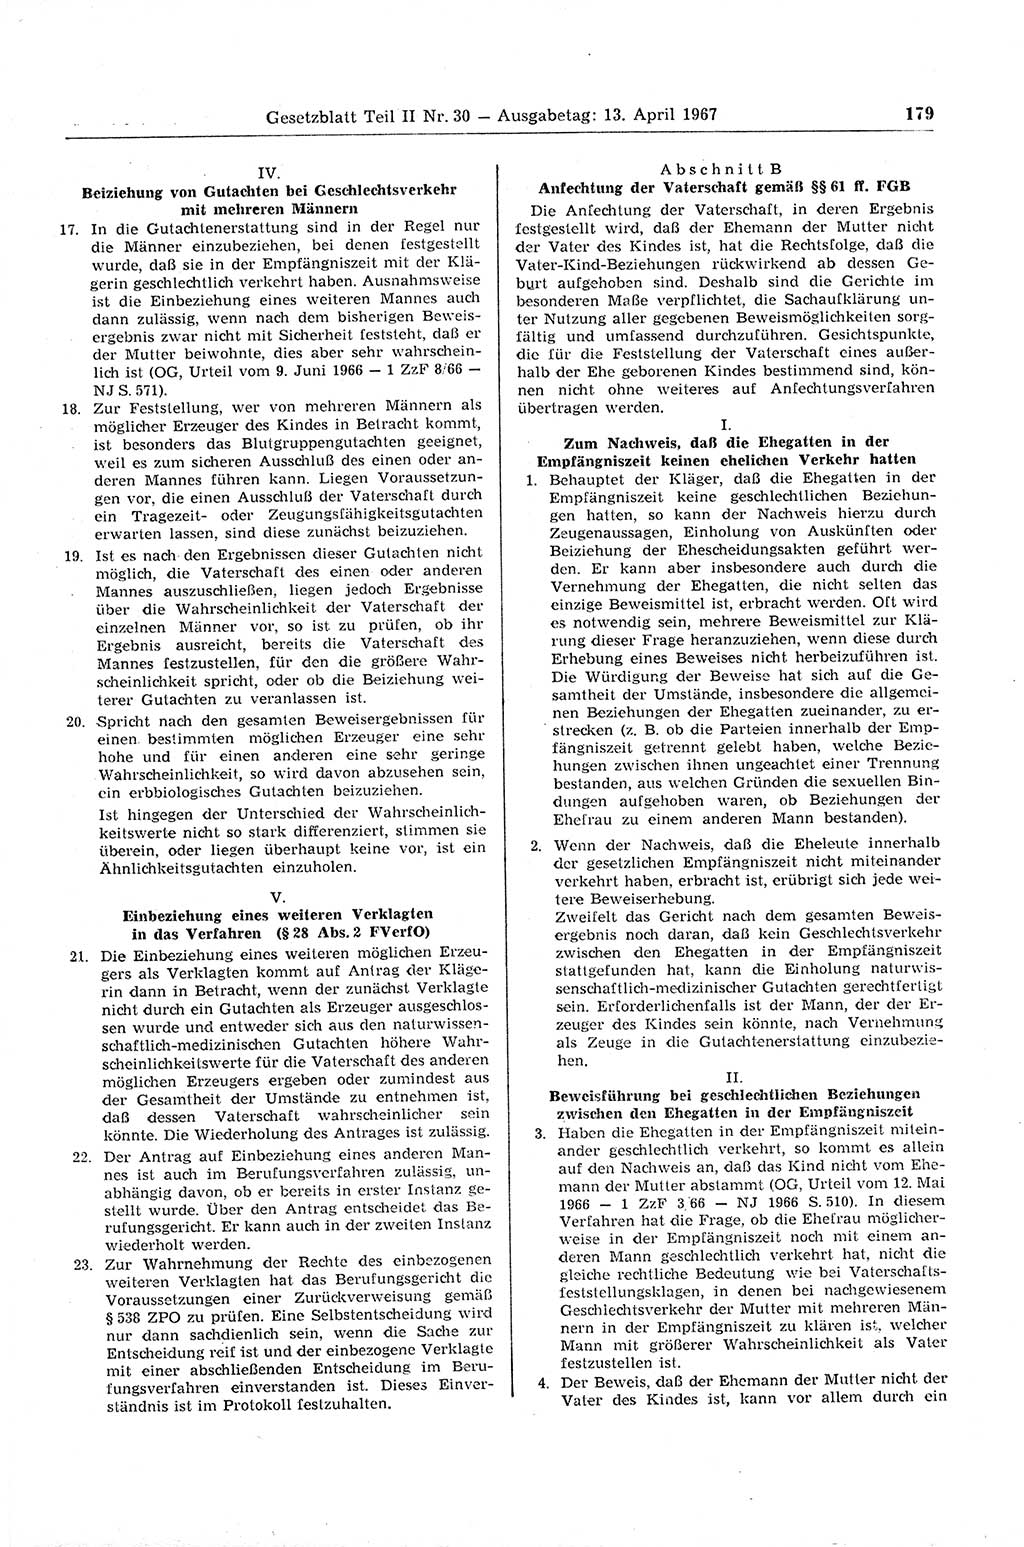 Gesetzblatt (GBl.) der Deutschen Demokratischen Republik (DDR) Teil ⅠⅠ 1967, Seite 179 (GBl. DDR ⅠⅠ 1967, S. 179)